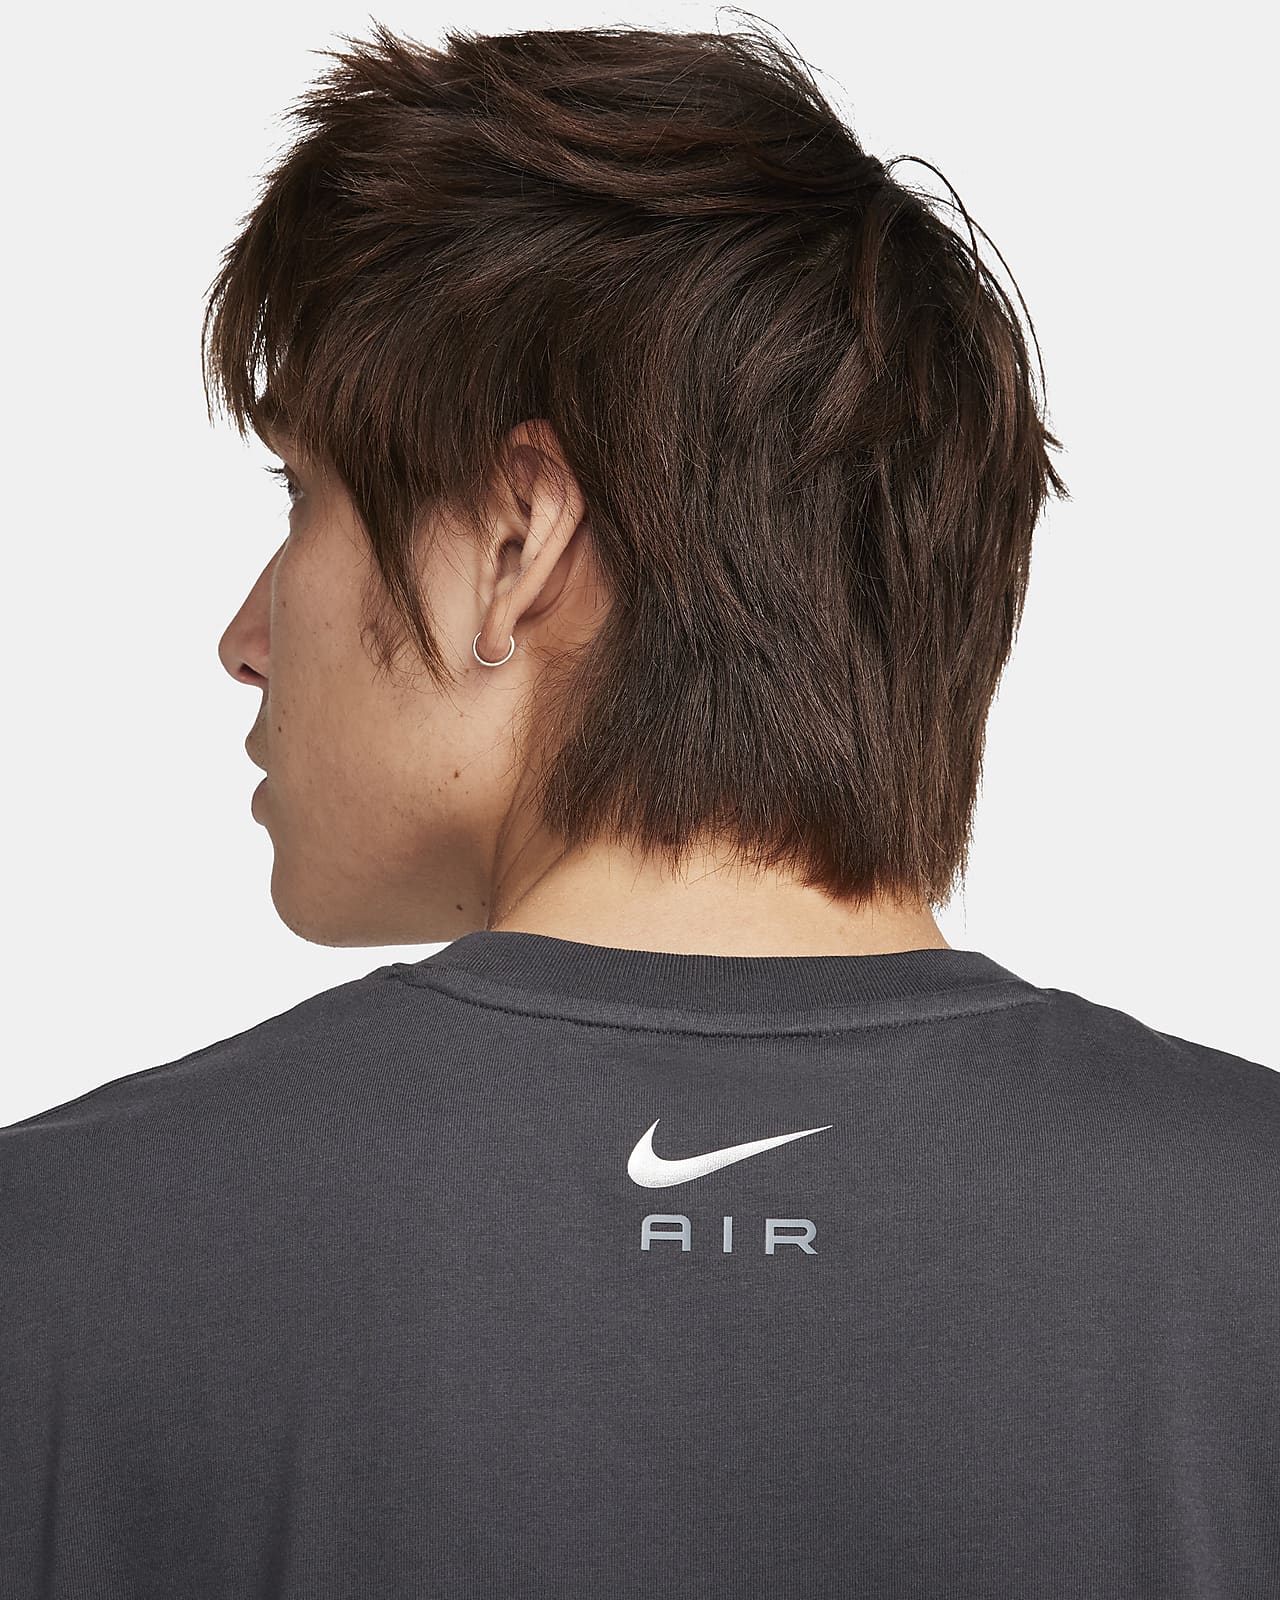 Nike Air Men's T-Shirt. Nike LU